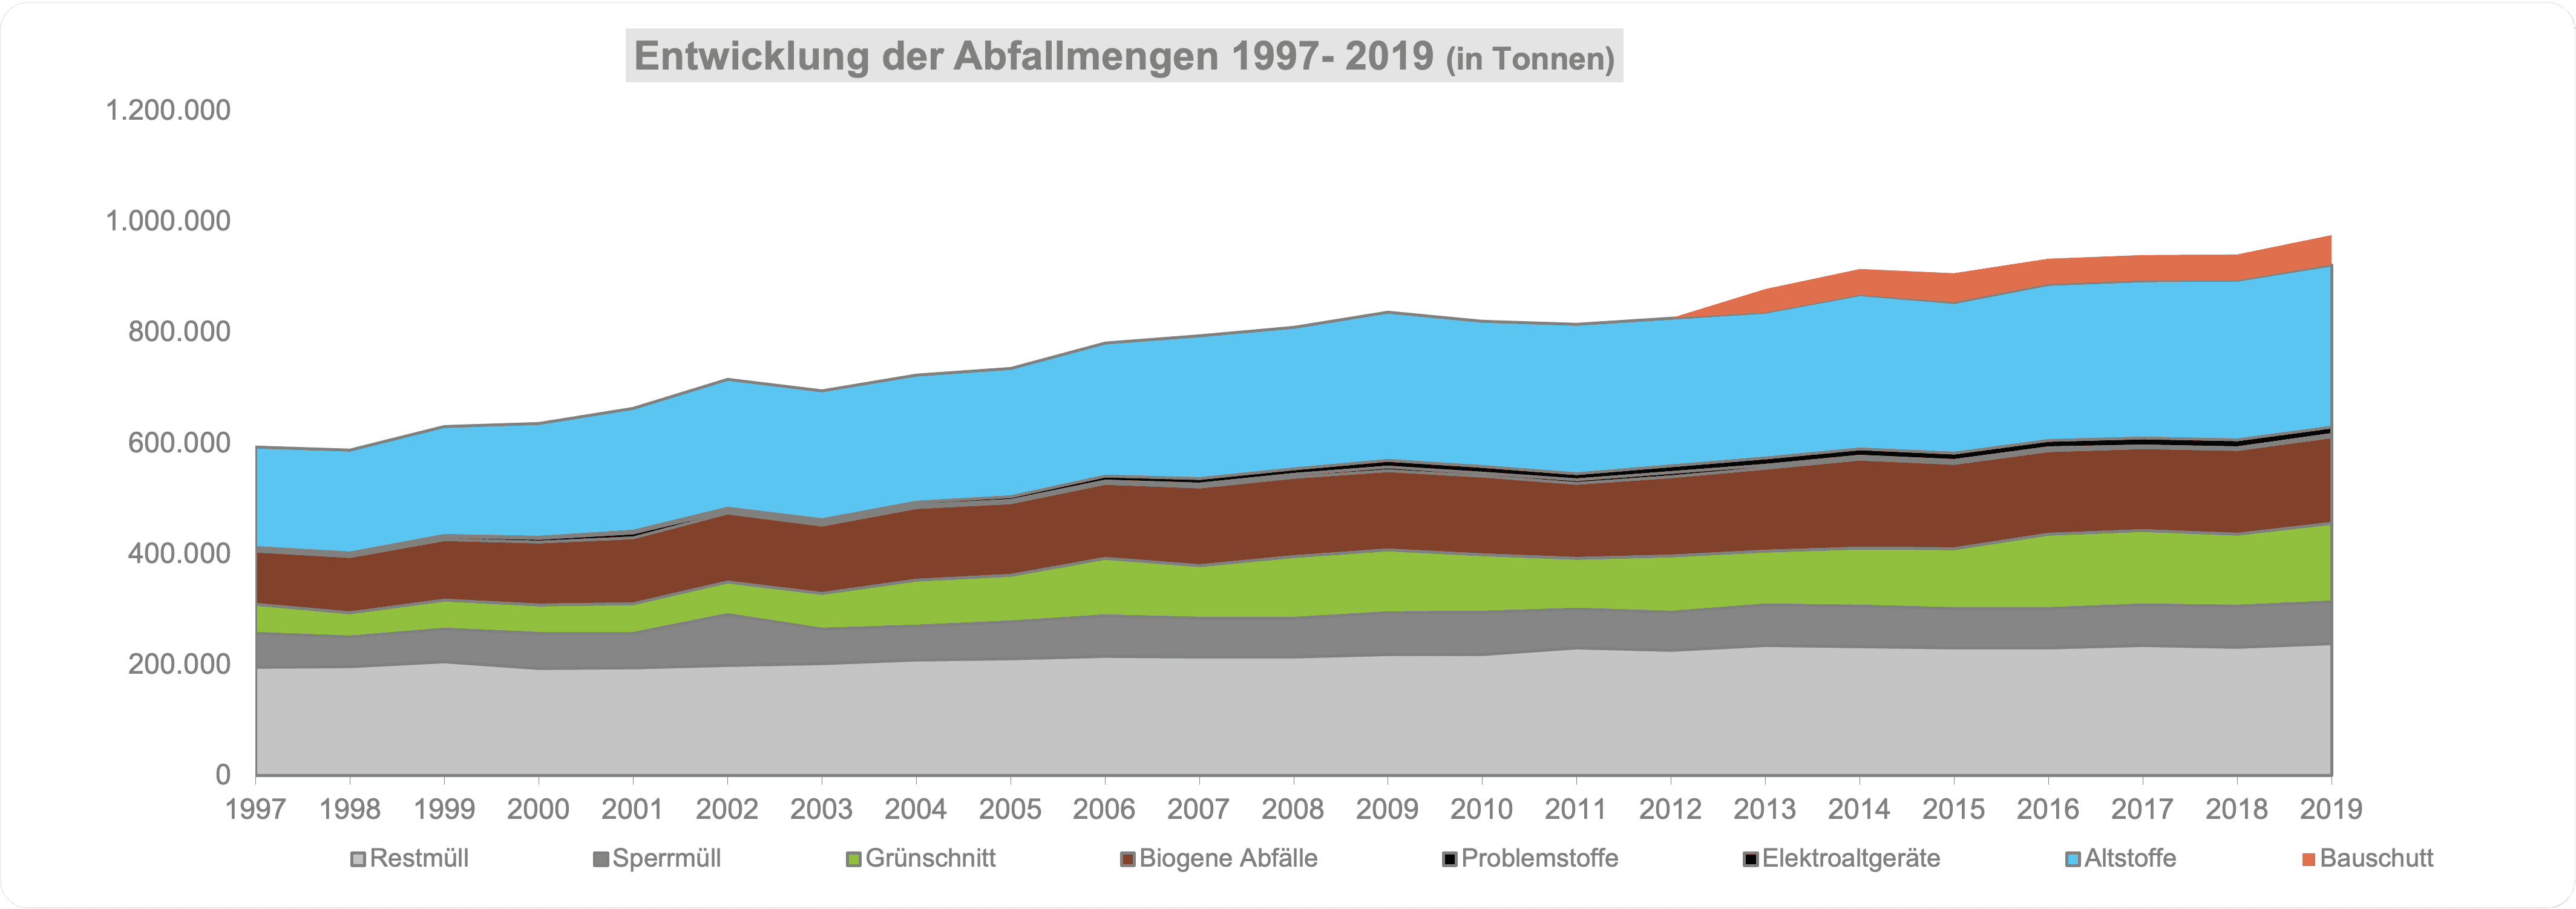 Die Abfallmengen sind zwischen 2000 und 2019 um mehr als 30% gestiegen. Durch die Erfolge der getrennten Sammlung konnten die Mengen an Restmüll in etwa gleichbleiben. Rest- und Sperrmüll werden in Niederösterreich fast ausschließlich einer thermischen Behandlung zugeführt.